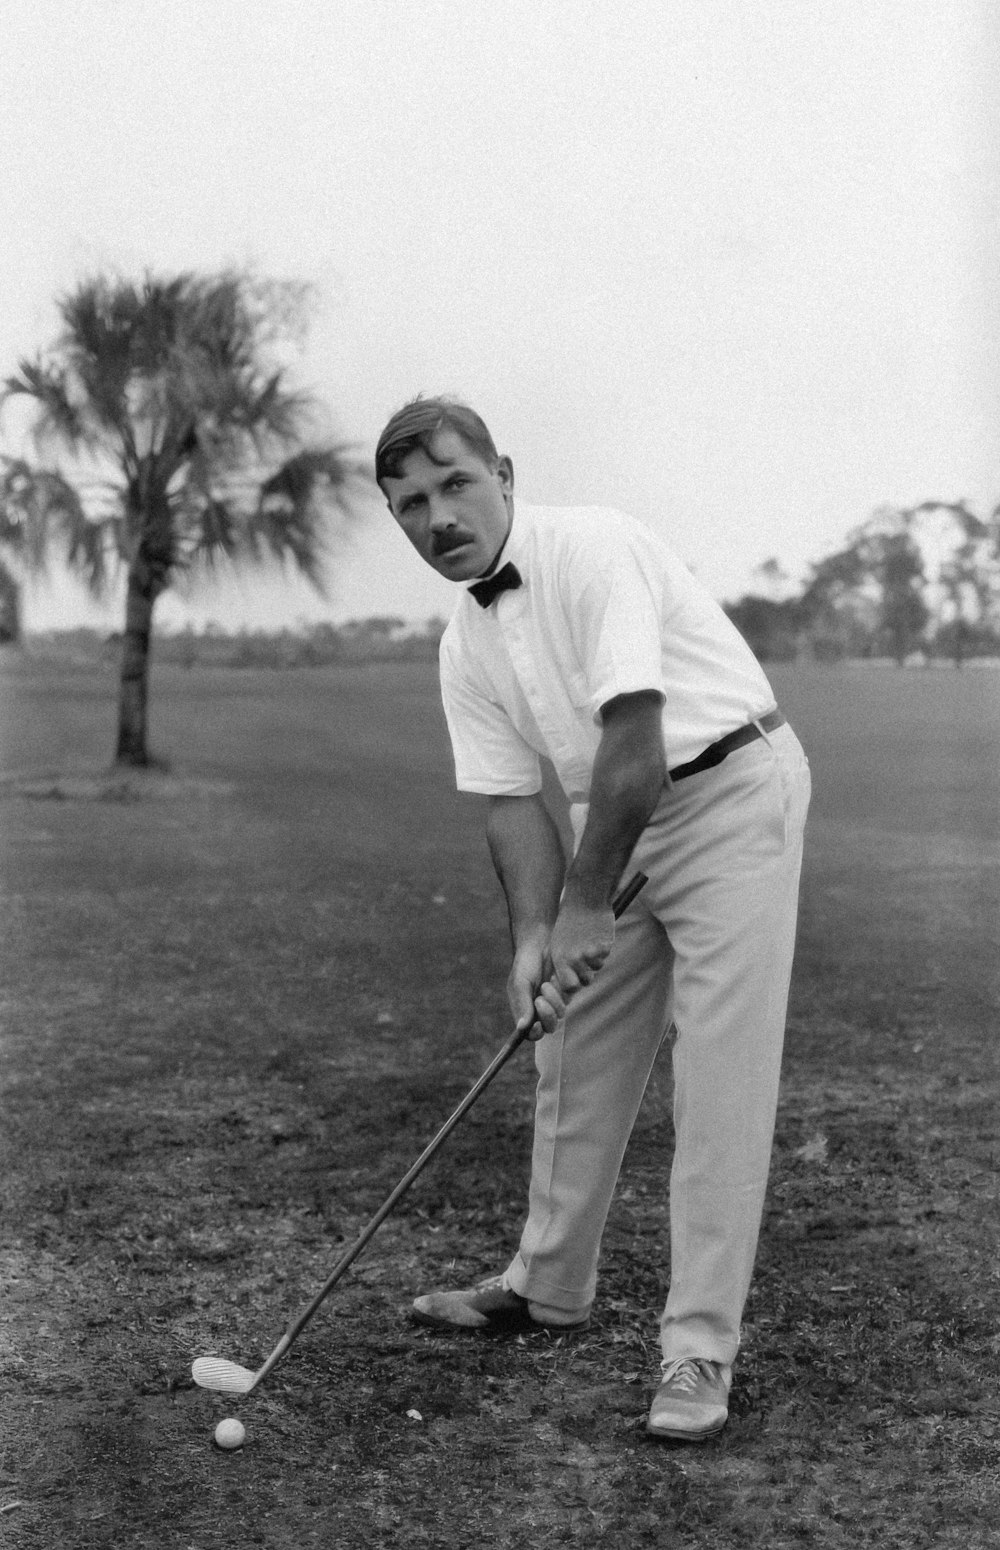 Una foto in bianco e nero di un uomo che gioca a golf